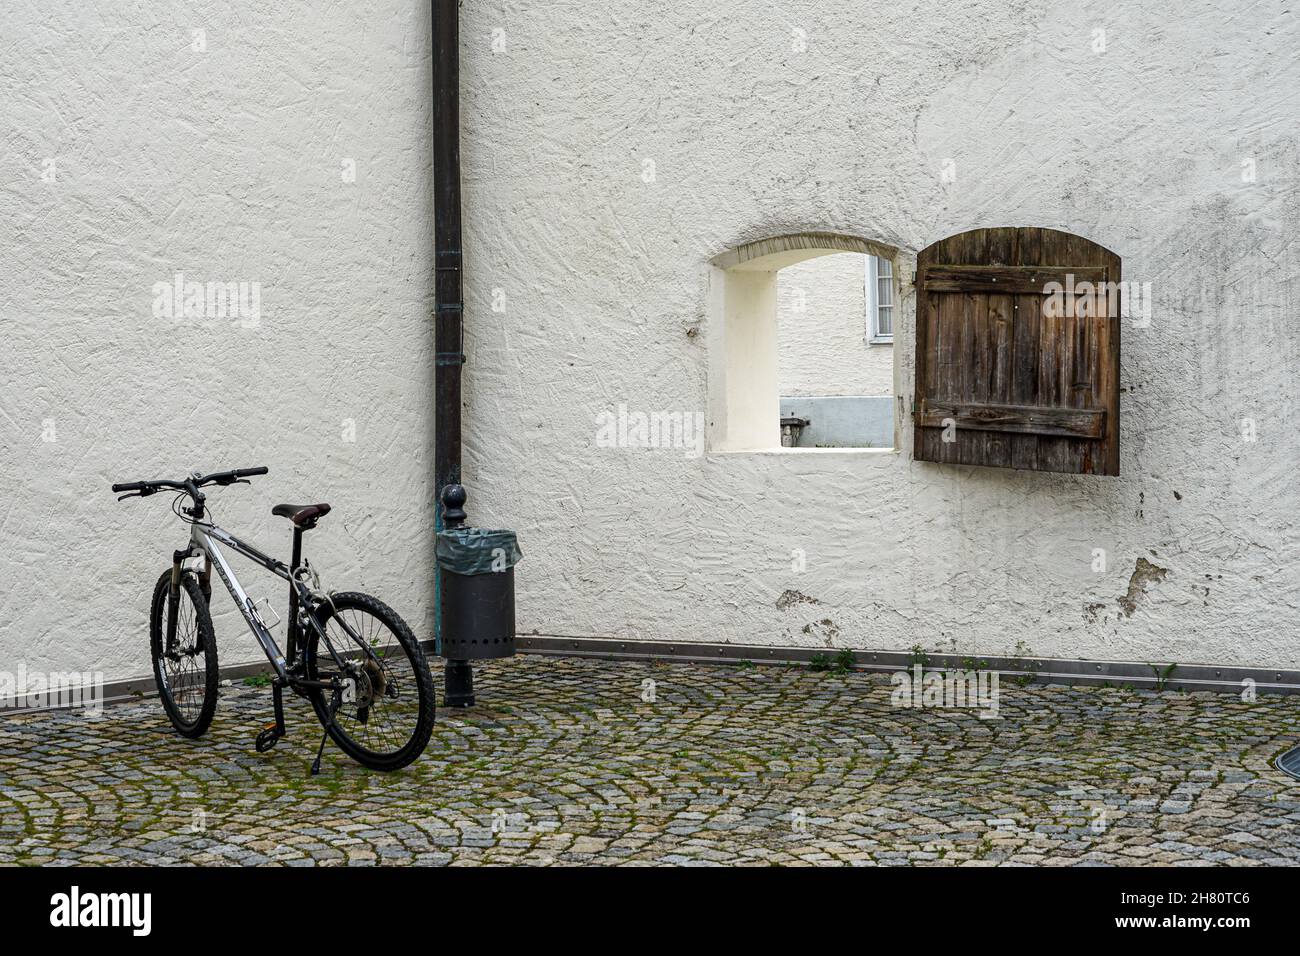 Geparktes Fahrrad in einem Innenhof vor einem Laternenpfahl mit einem Papierkorb.Blick auf die Straße durch ein Fenster, das in der Wand öffnet. Stockfoto